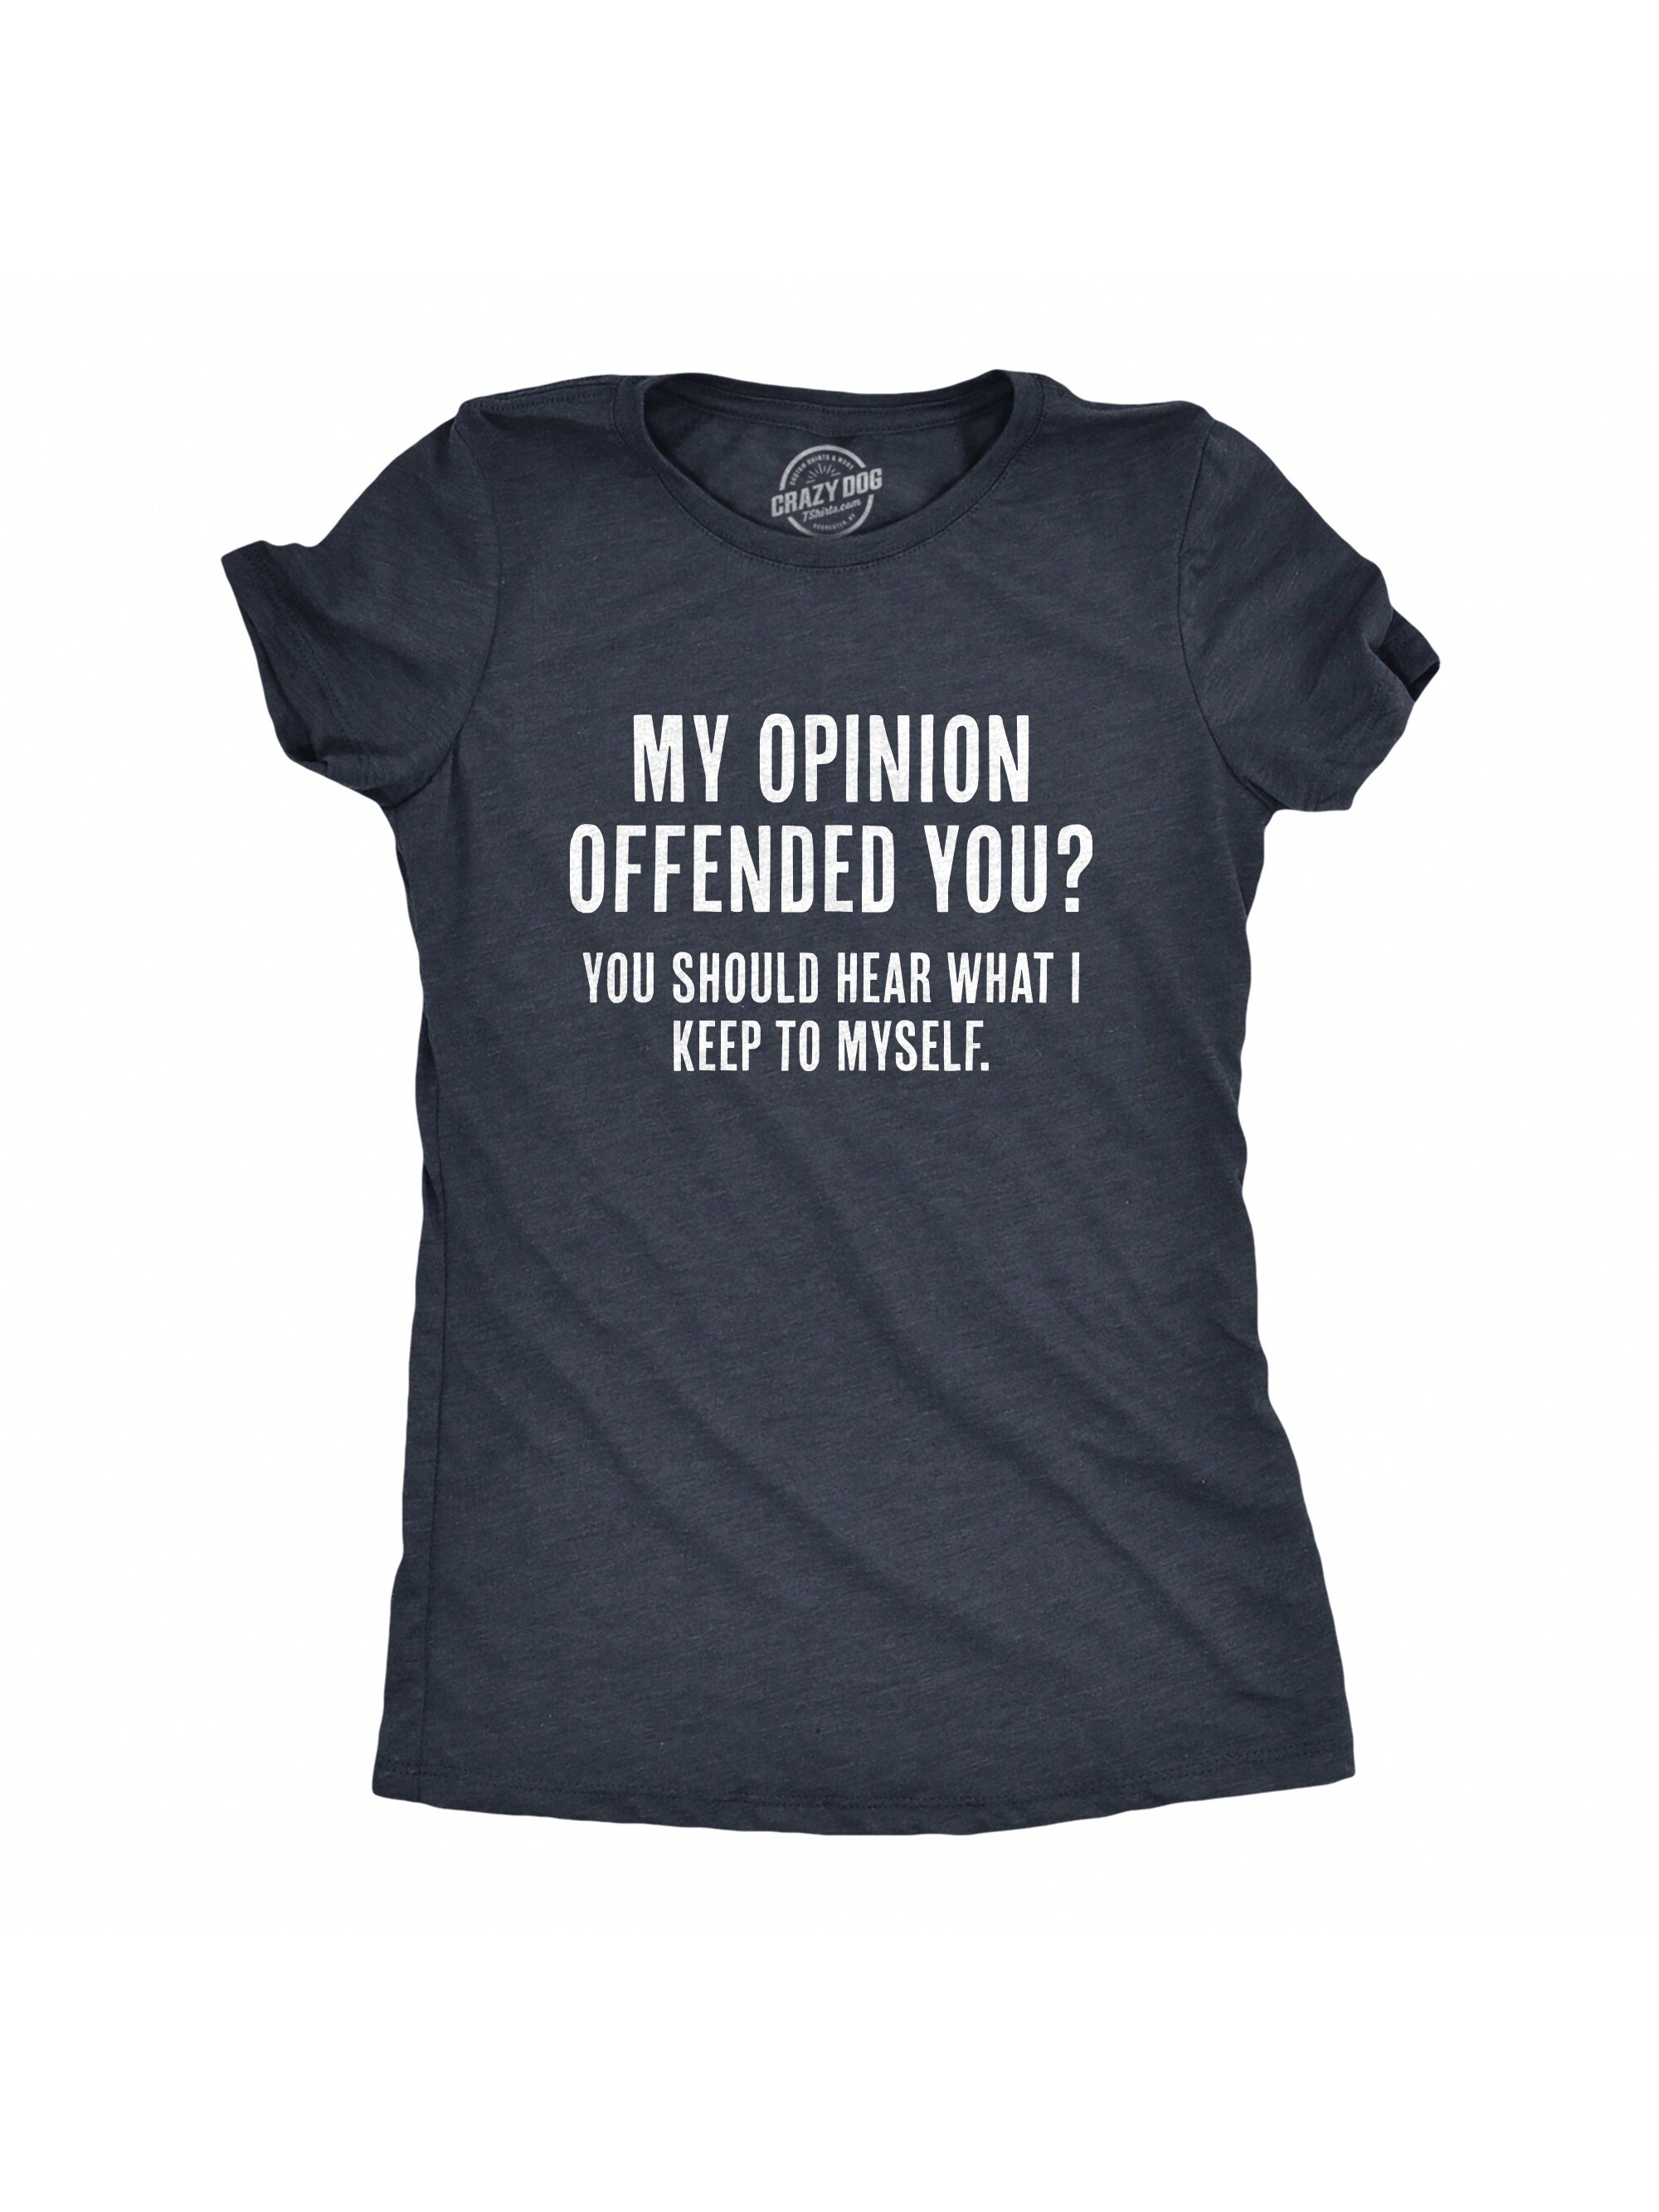 Женская футболка «Я видел эту карму», хизер нэви - мнение оскорблено